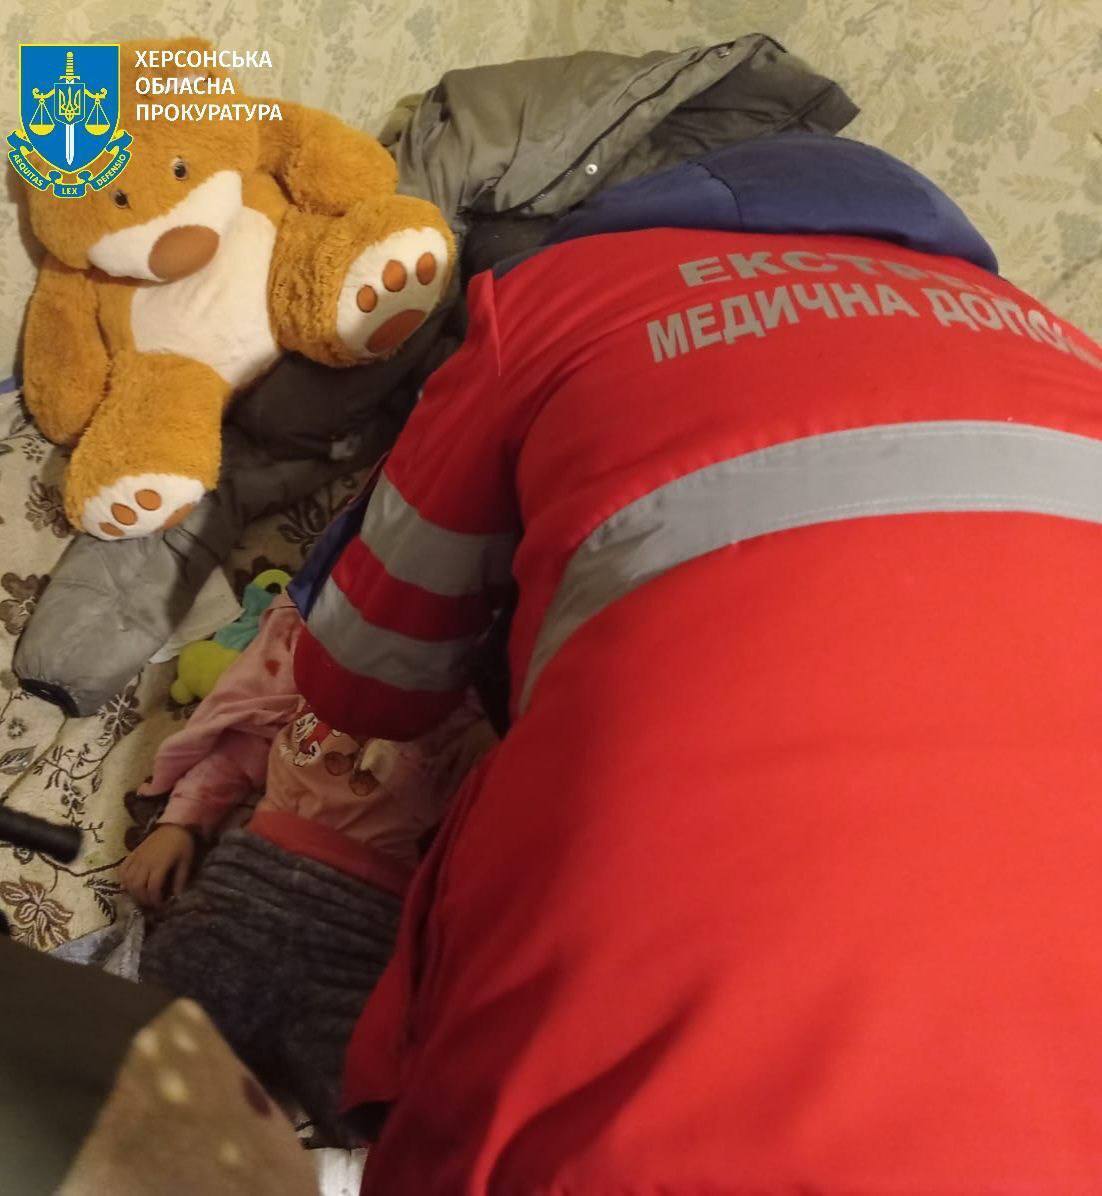 Армія Росії обстріляла зранку Херсон: 5 поранених, серед них – дитина